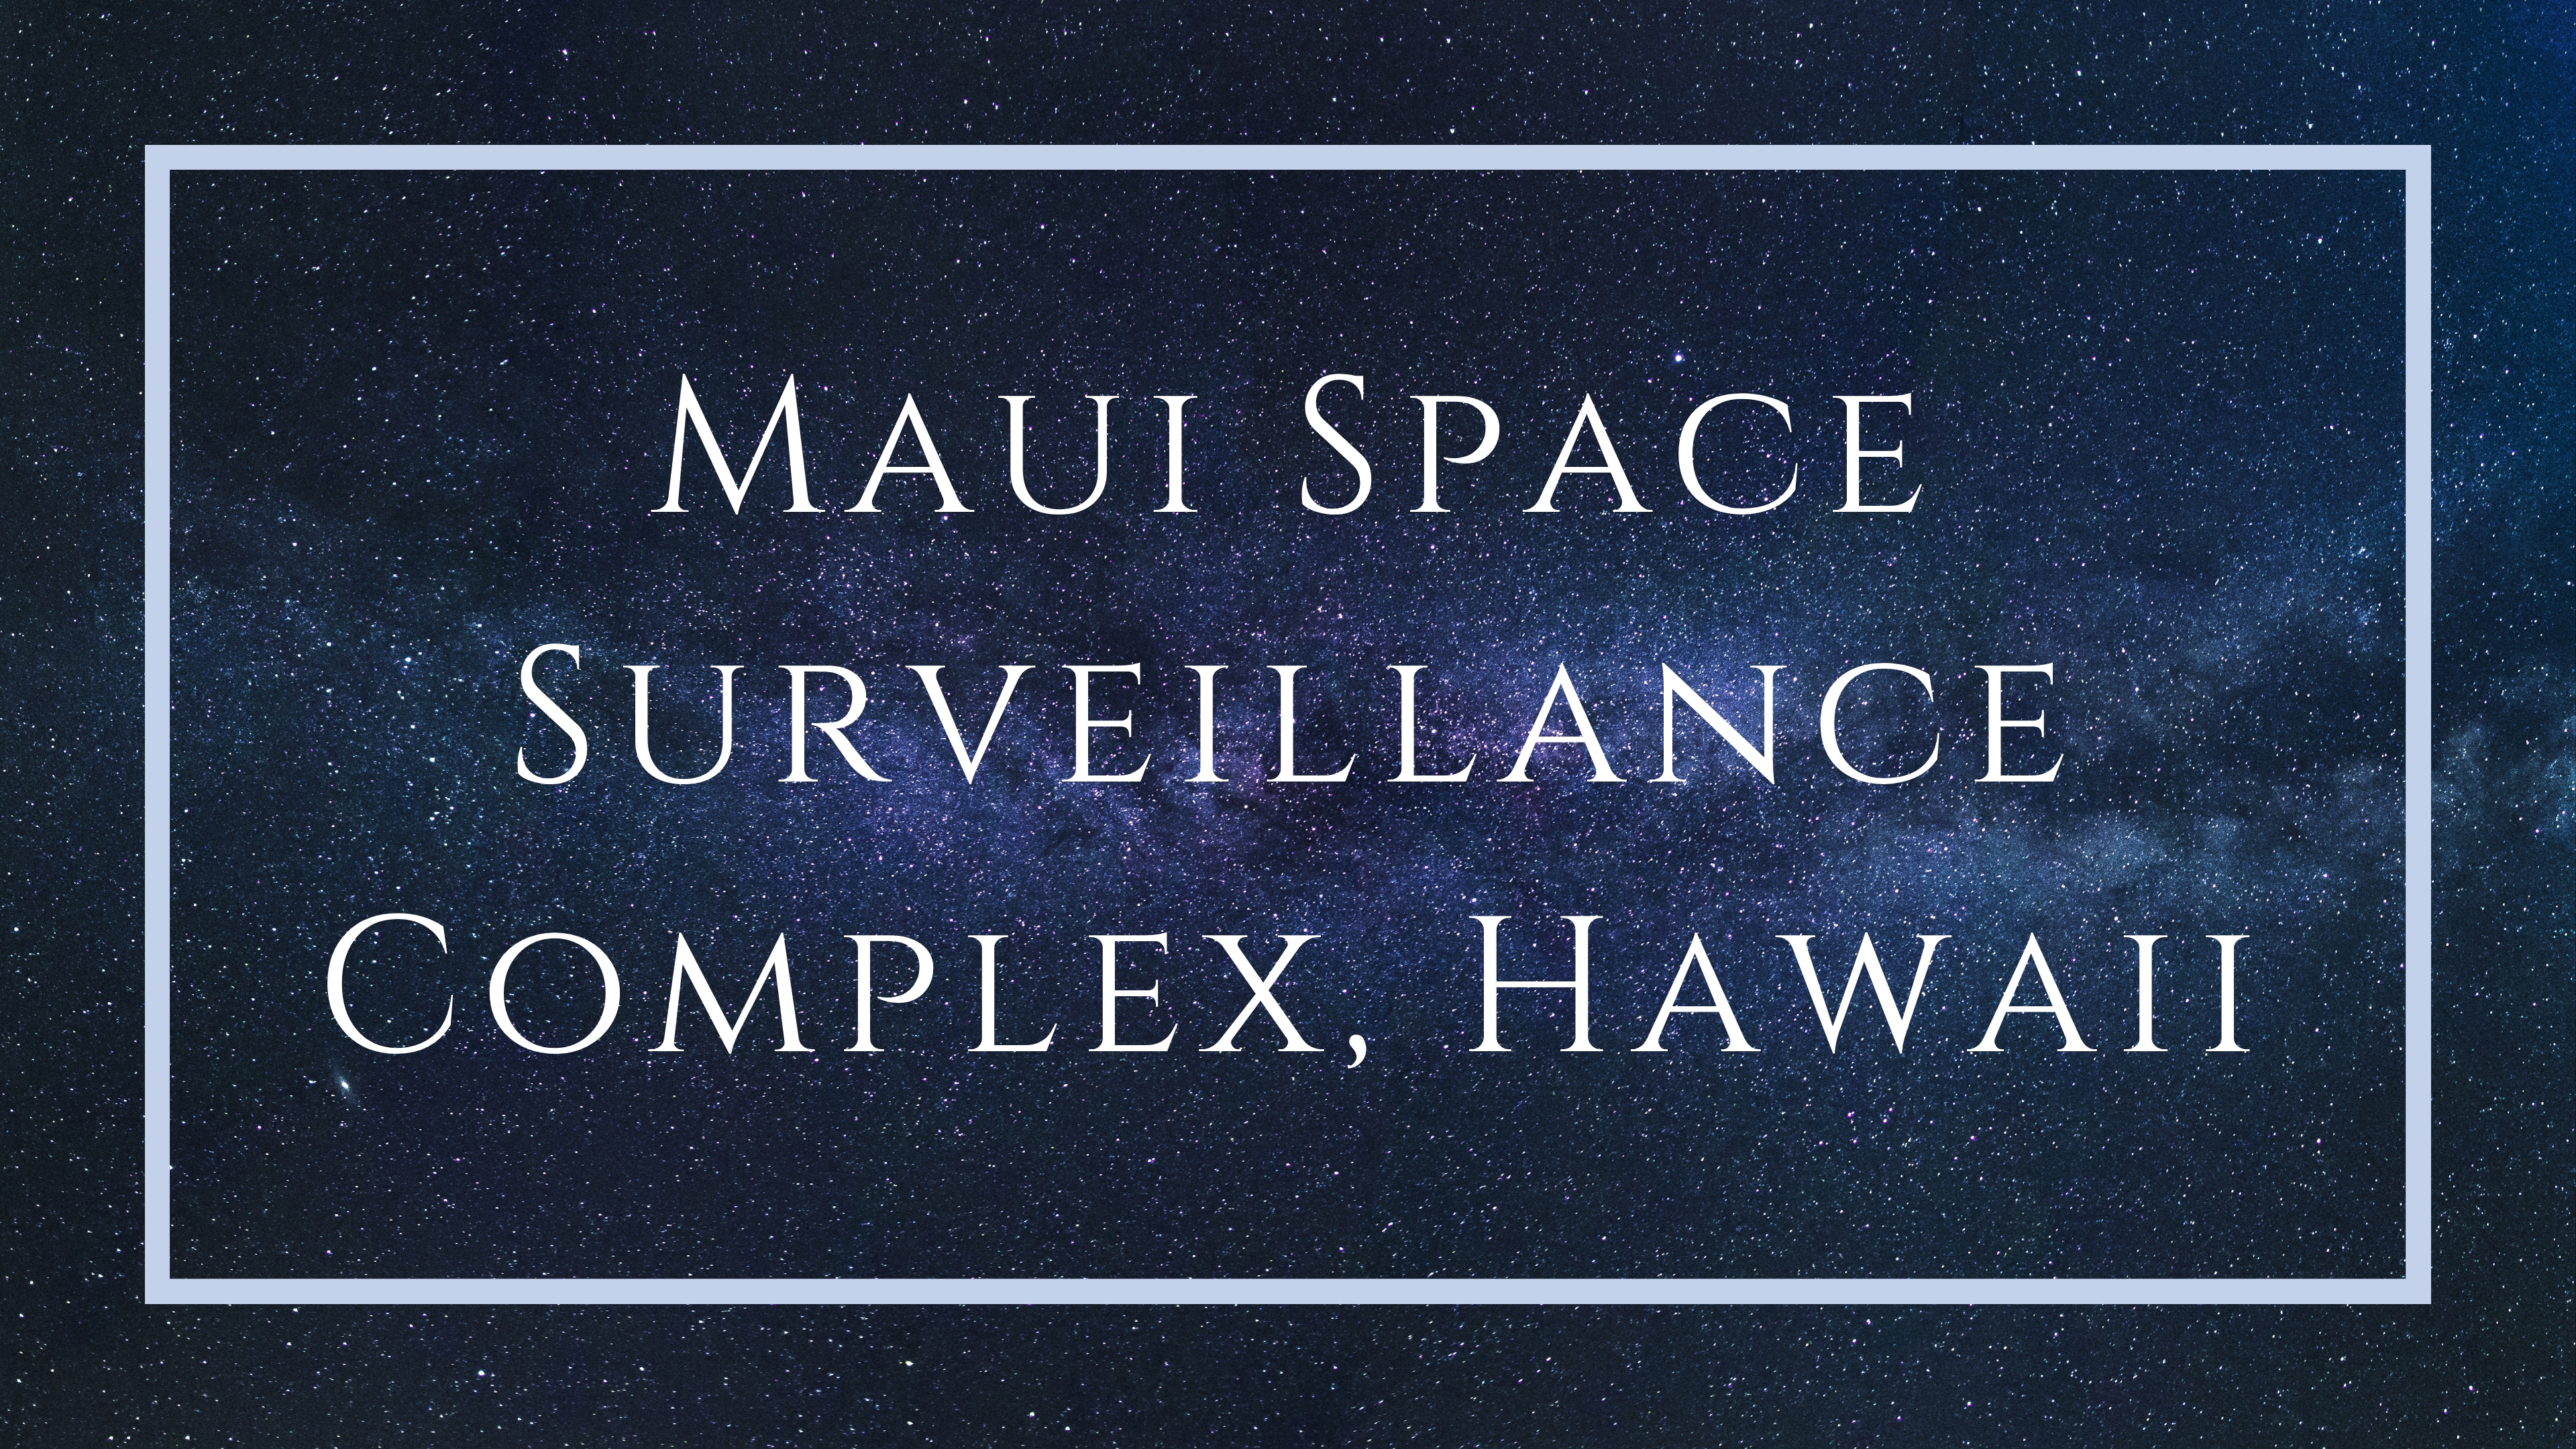 Maui Space Surveillance Complex